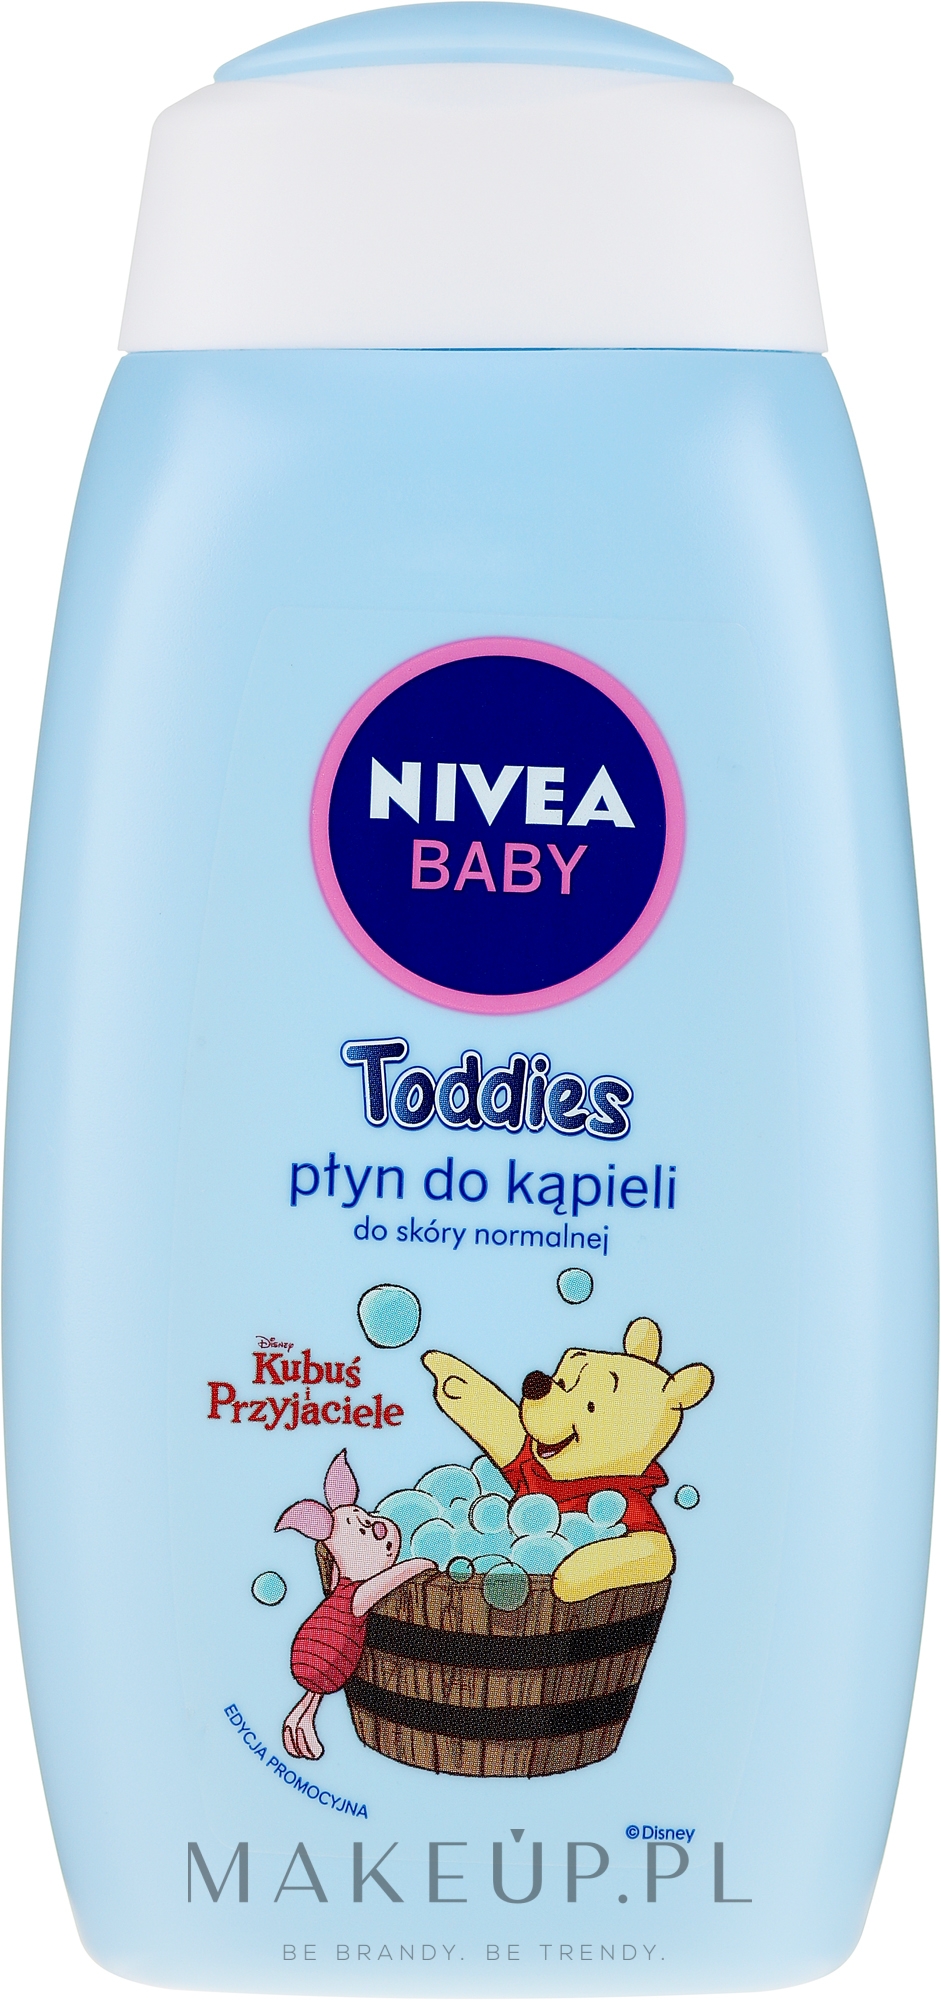 nivea baby toddies szampon do włosów do skóry normalnej wizaz